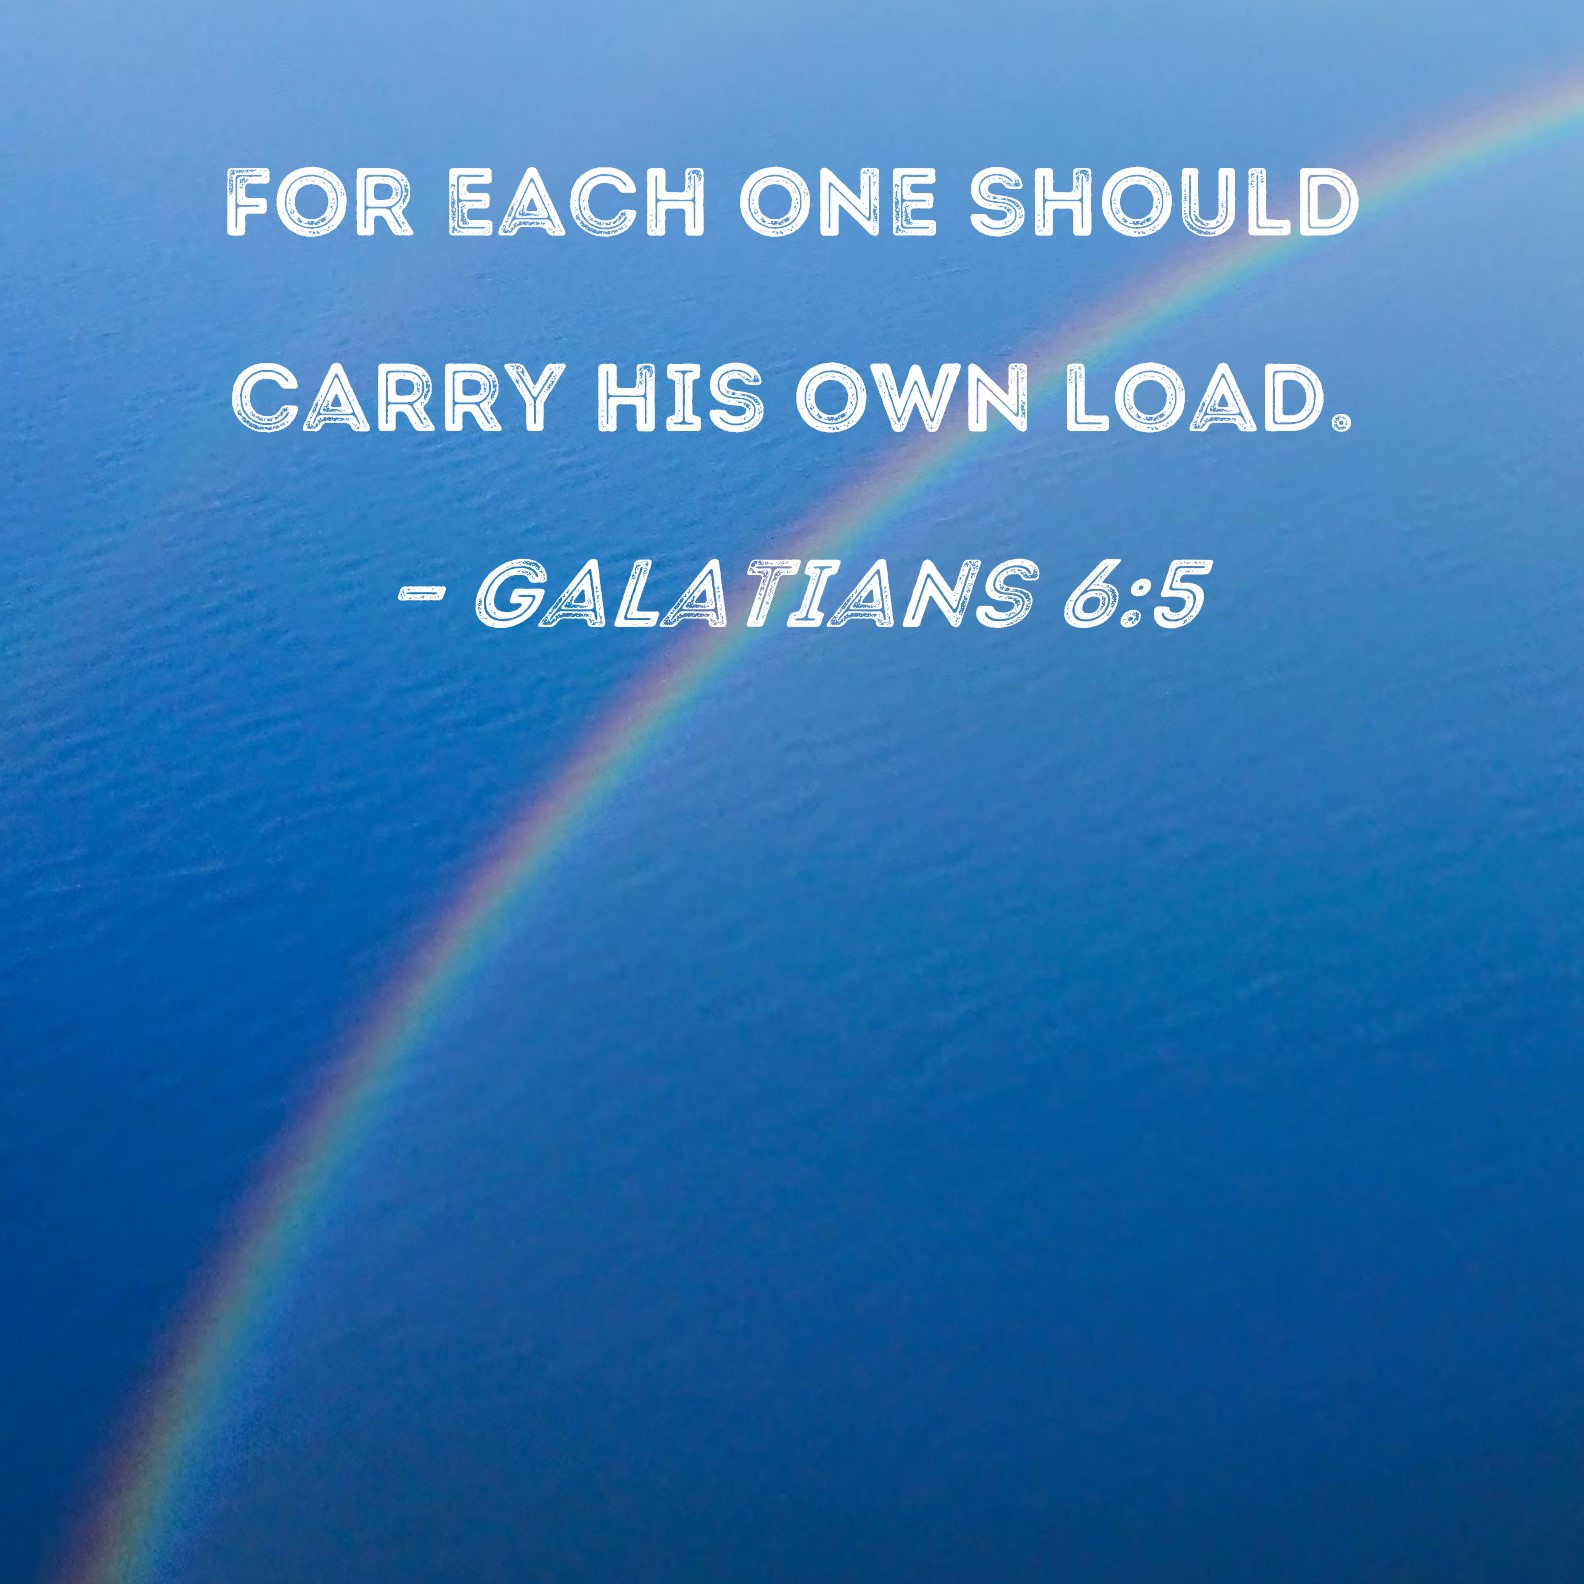 Galatians 6:2  re-Ver(sing) Verses